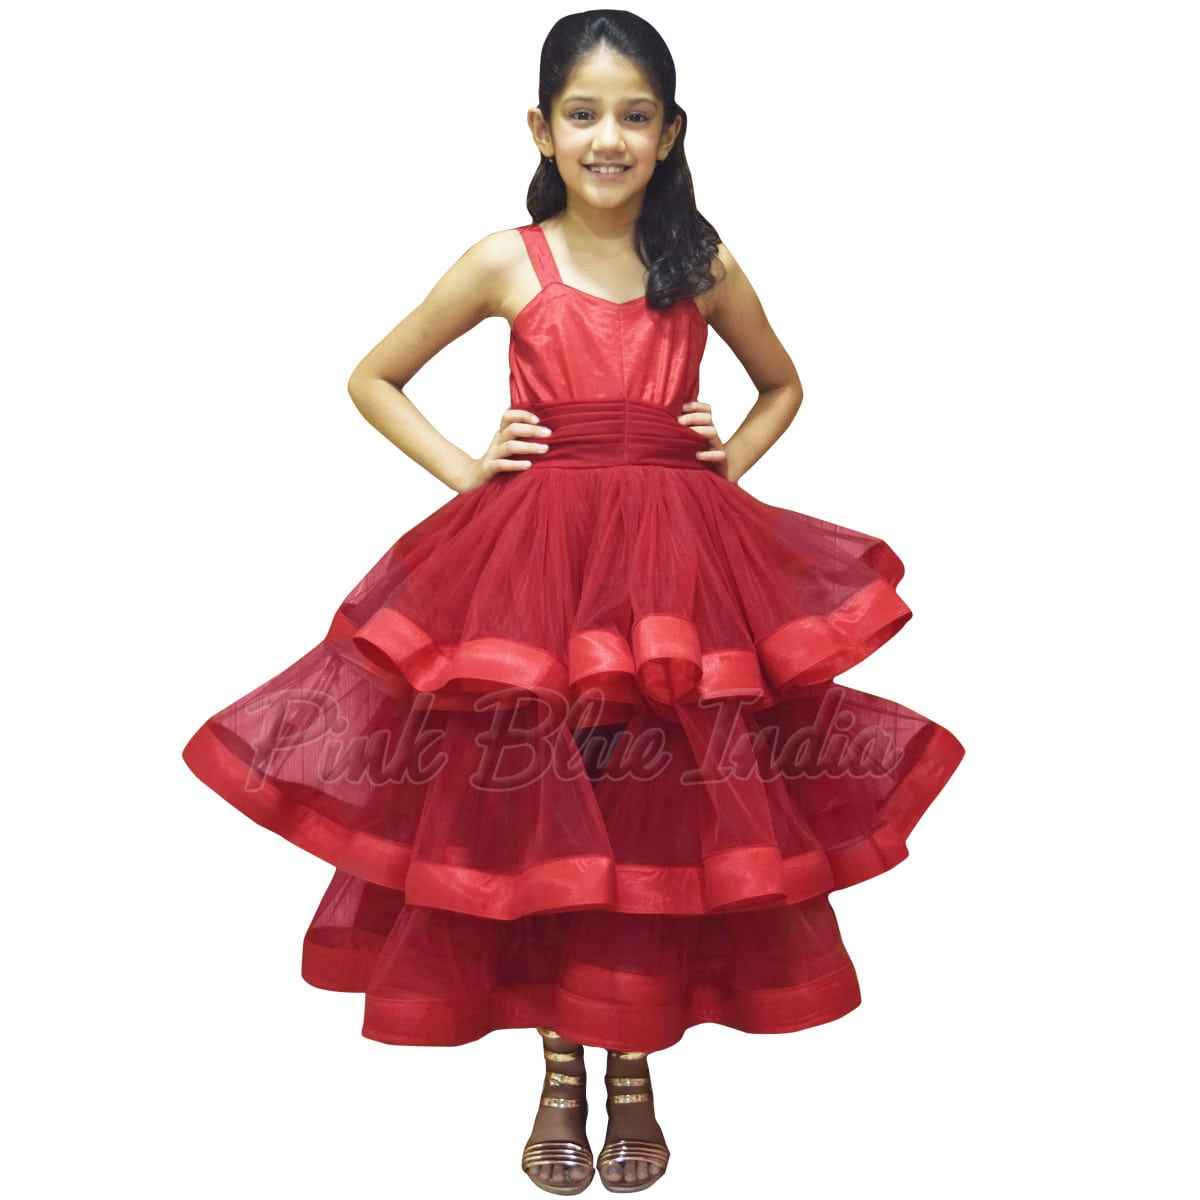 Girls Dresses - Buy Girls Dresses online at Best Prices in India |  Flipkart.com